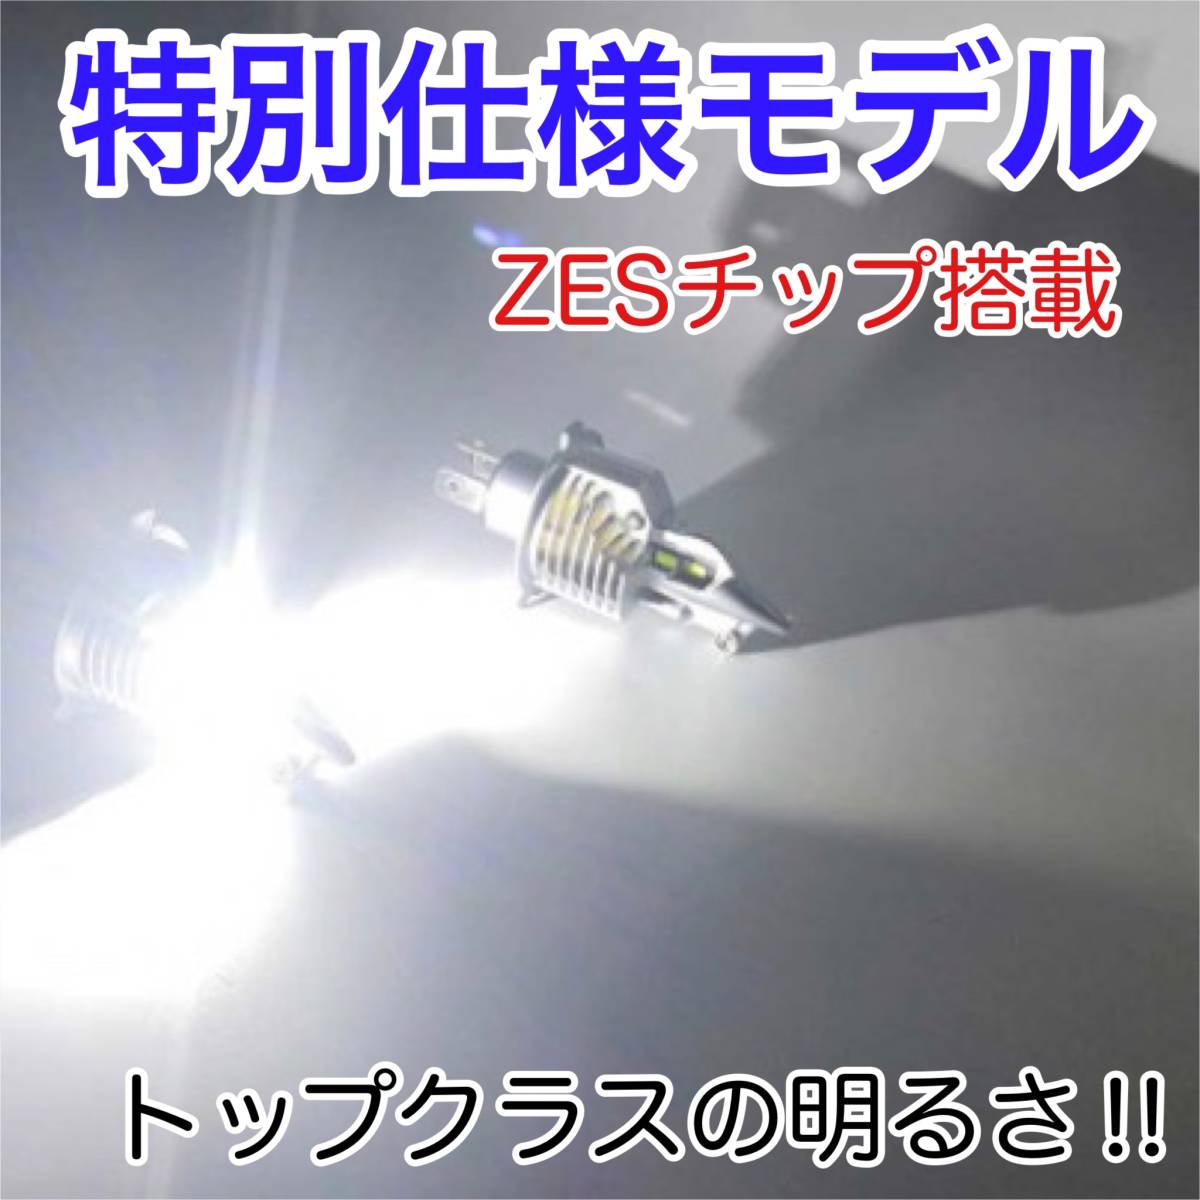 SUZUKI スズキ GSX-R400 GK71B LEDヘッドライト H4 Hi/Lo バルブ バイク用 1灯 S25 テールランプ2個 ホワイト 交換用